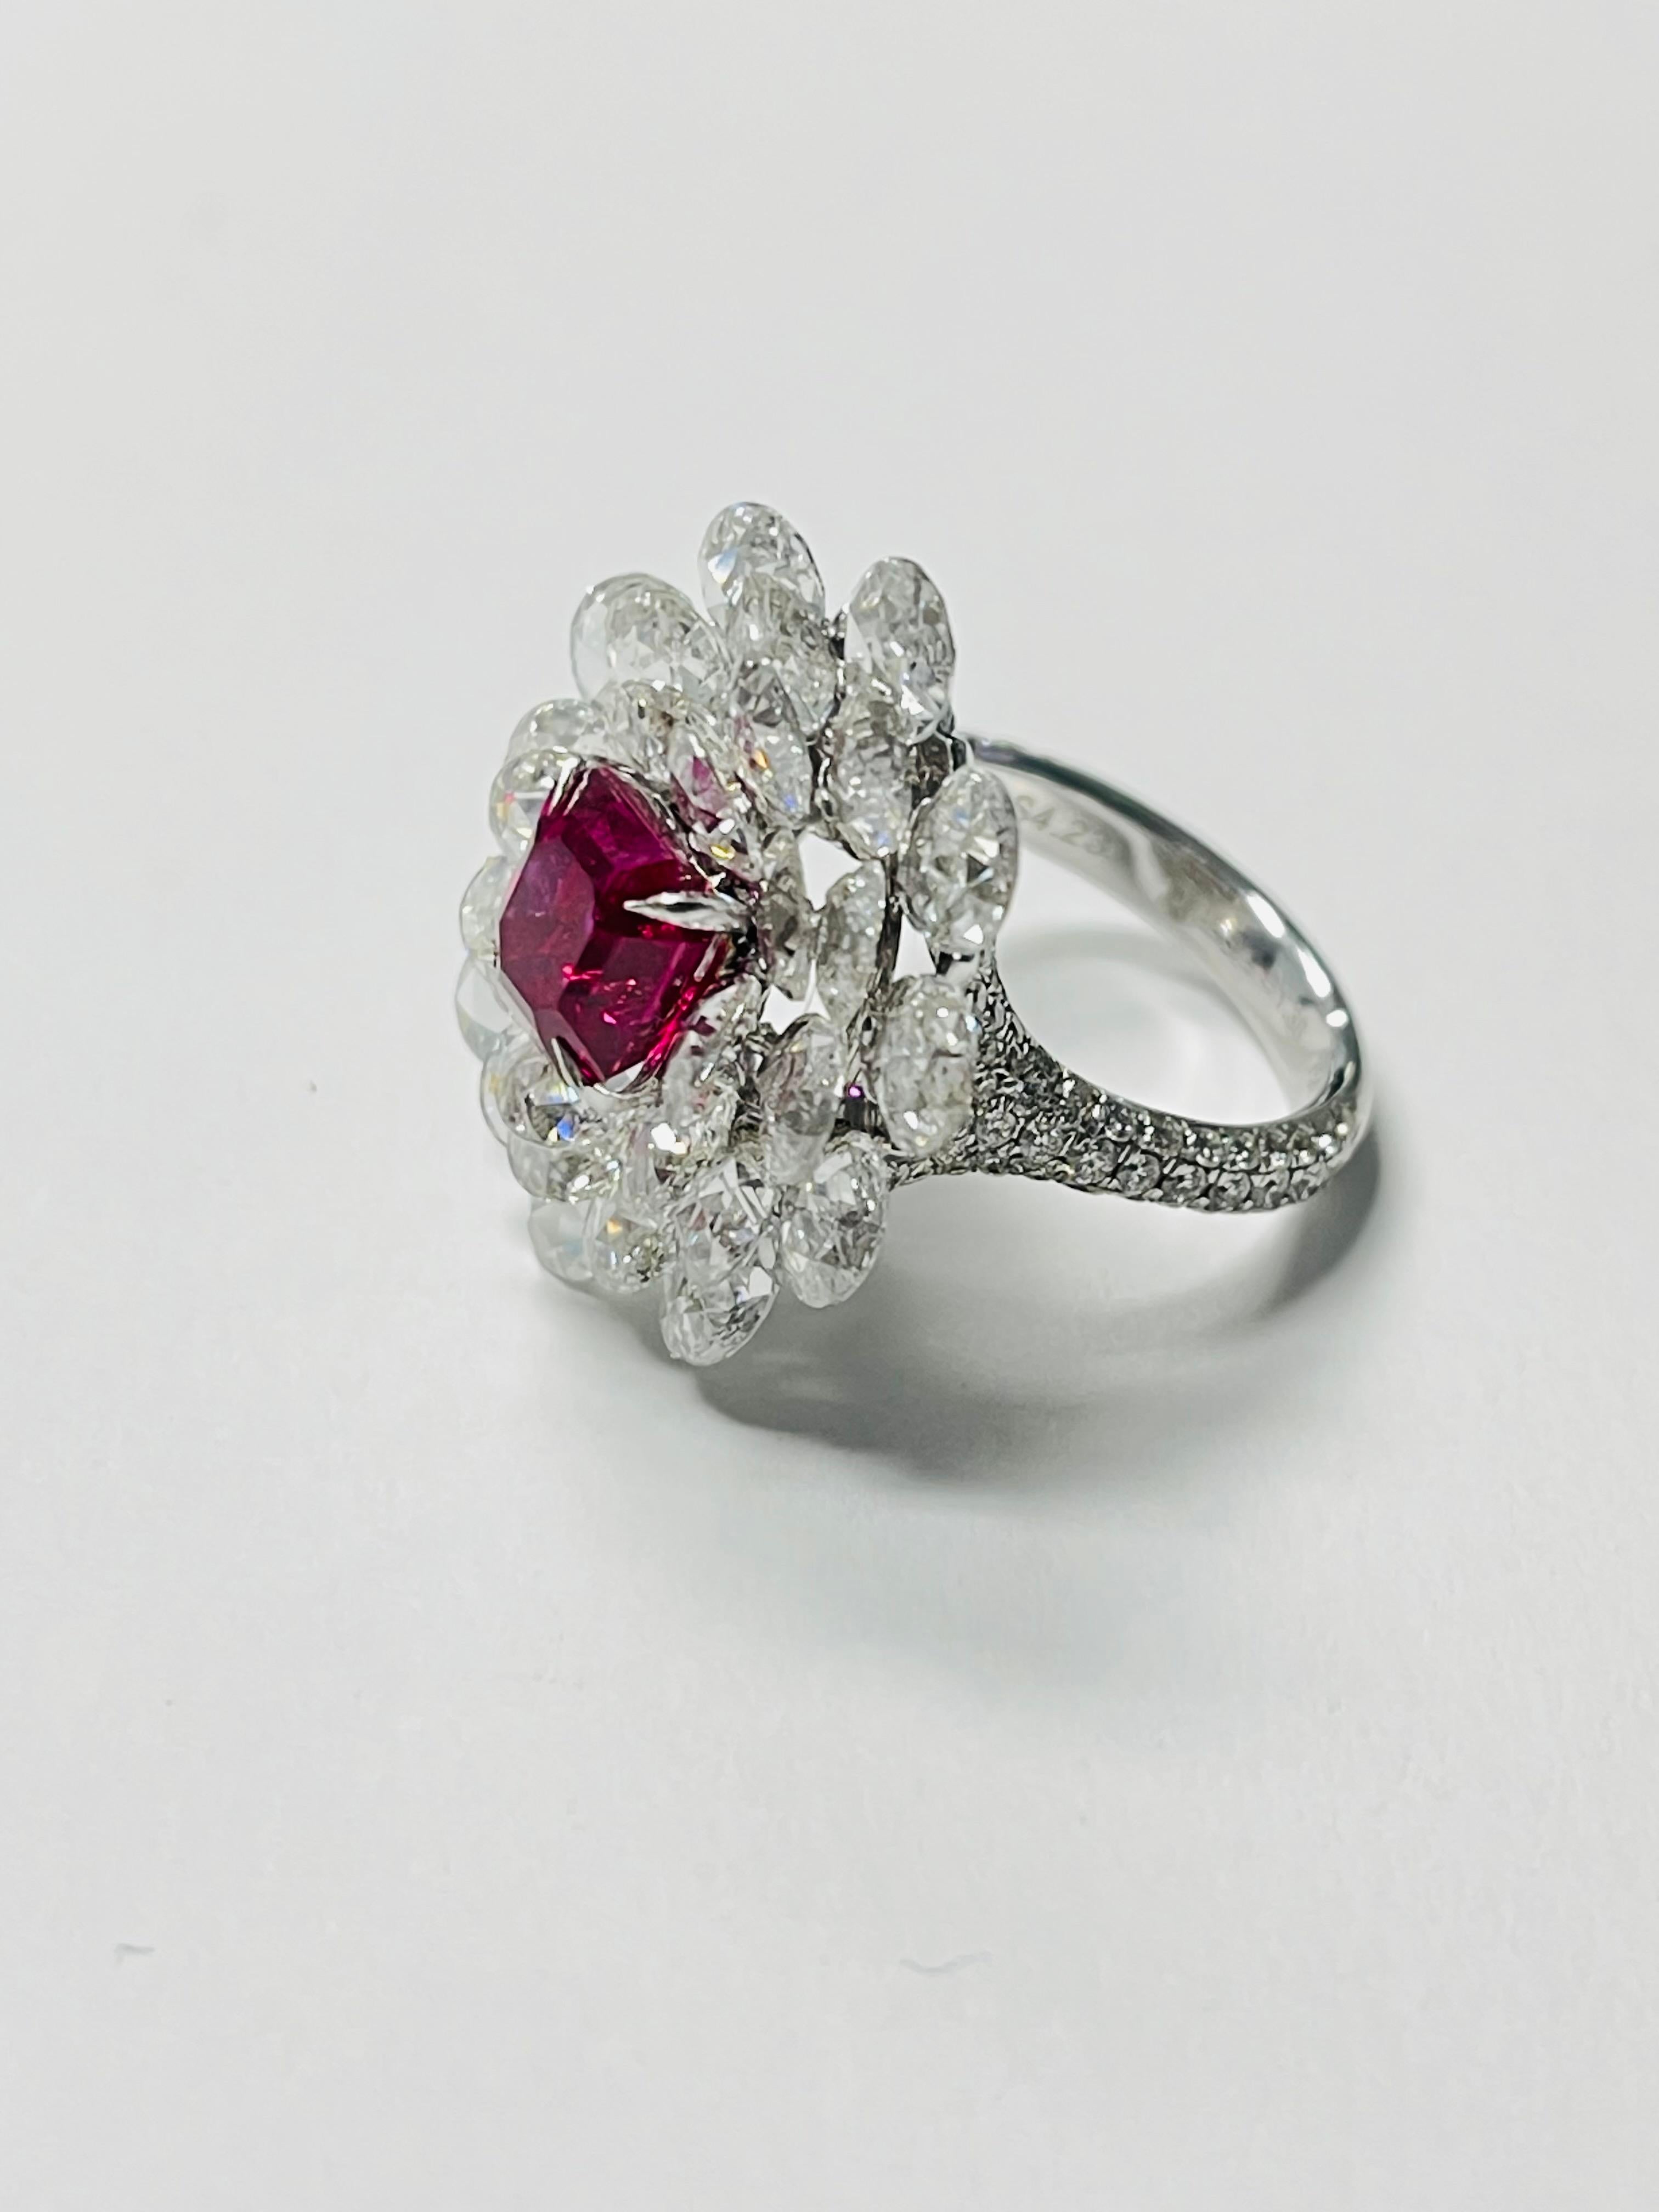   Ring mit Rubin und Diamanten, BURMA NO HEAT GUBELIN UND GIA zertifiziert  (Kissenschliff)